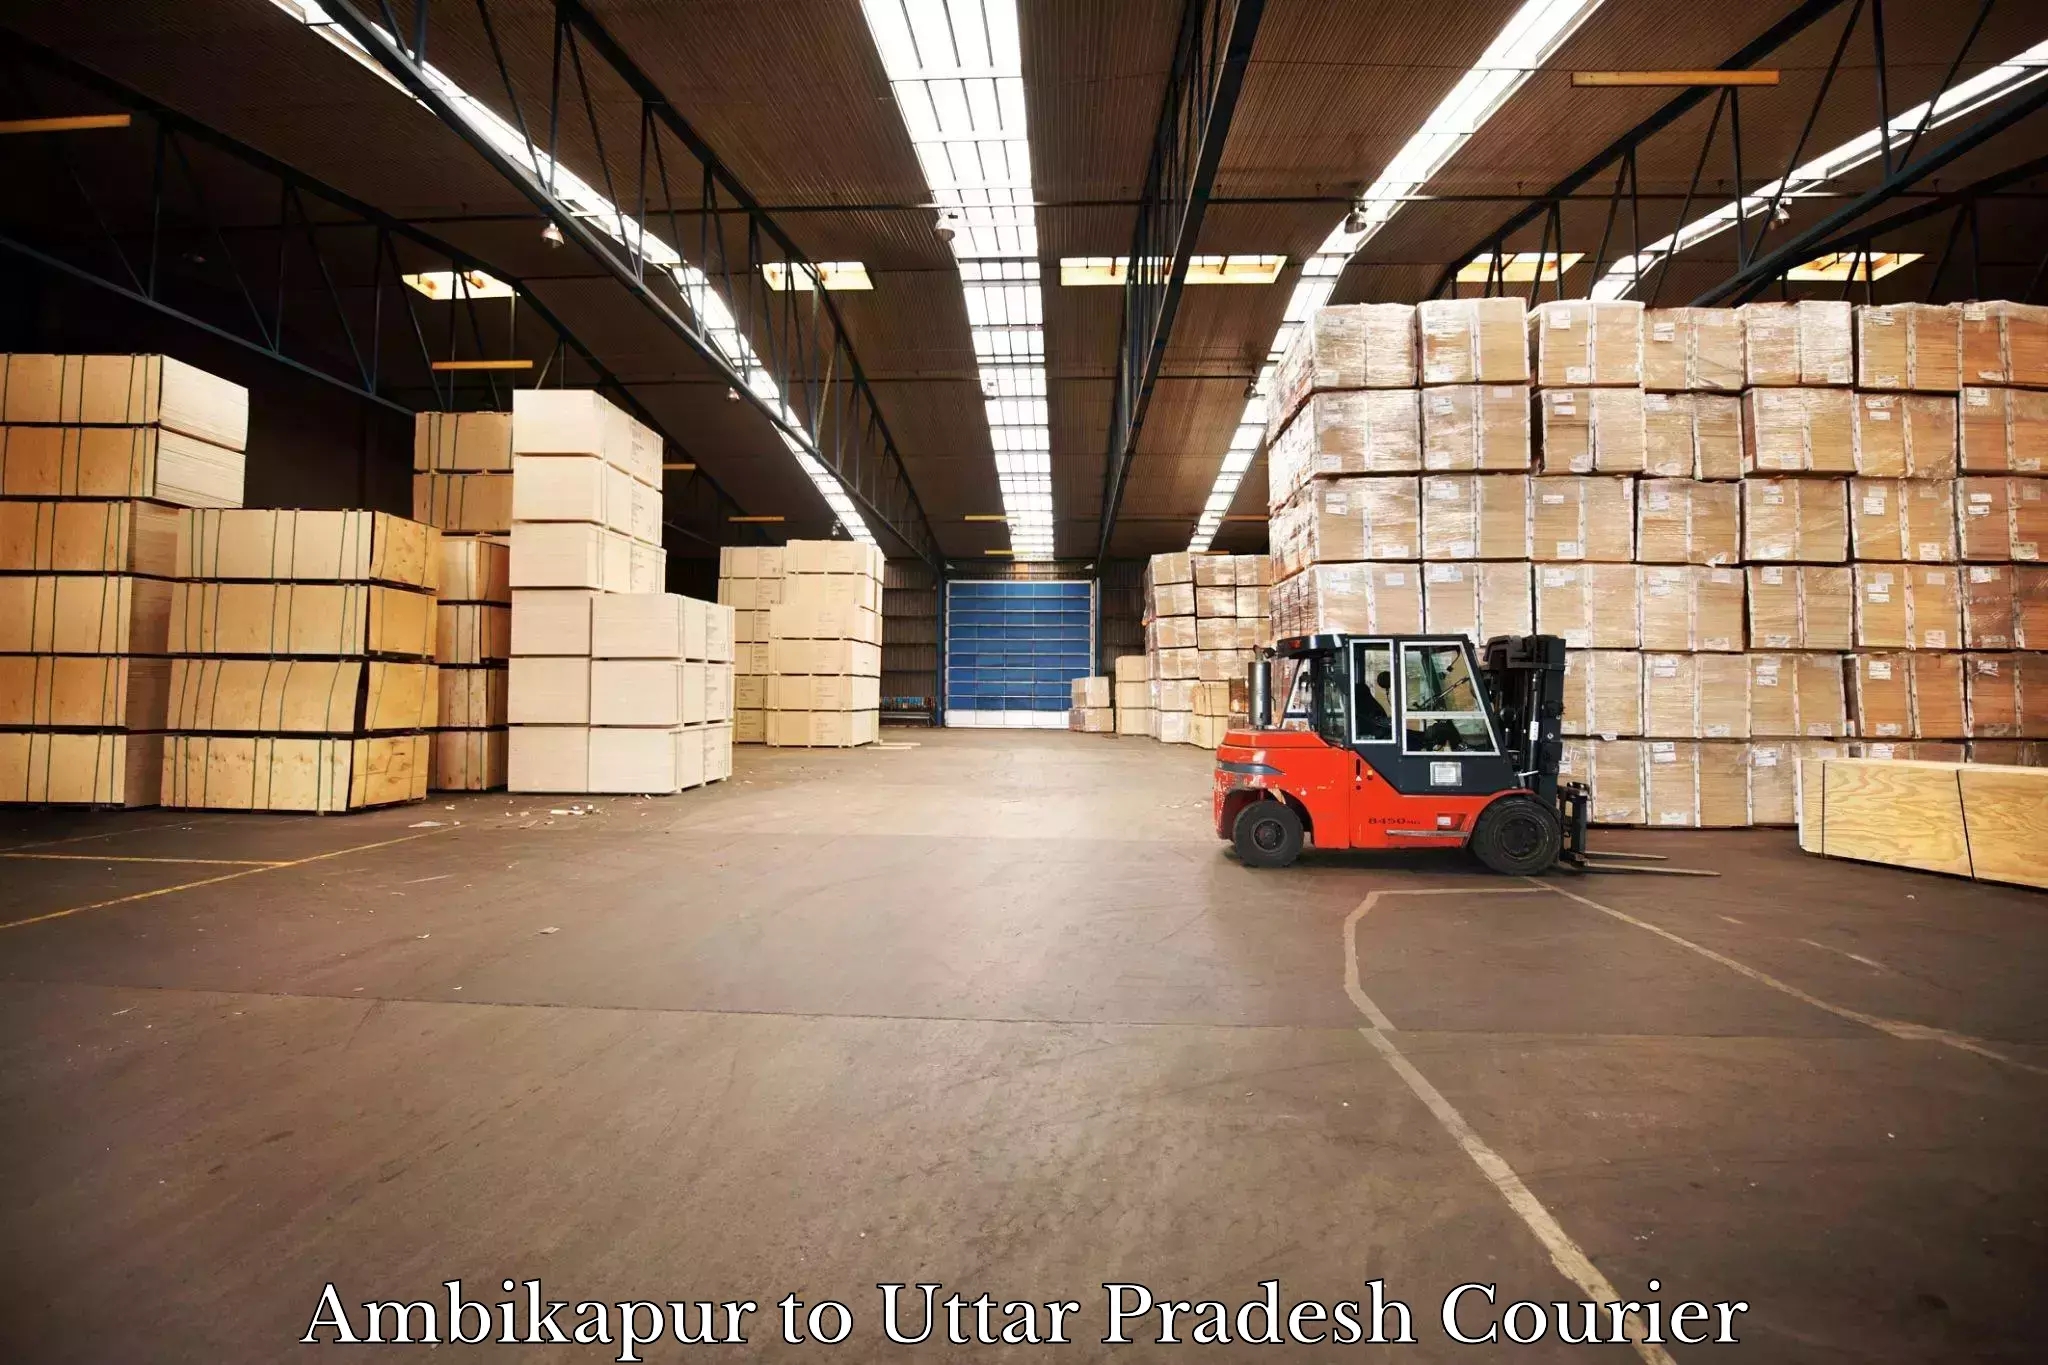 Courier service comparison Ambikapur to Jagdishpur Amethi